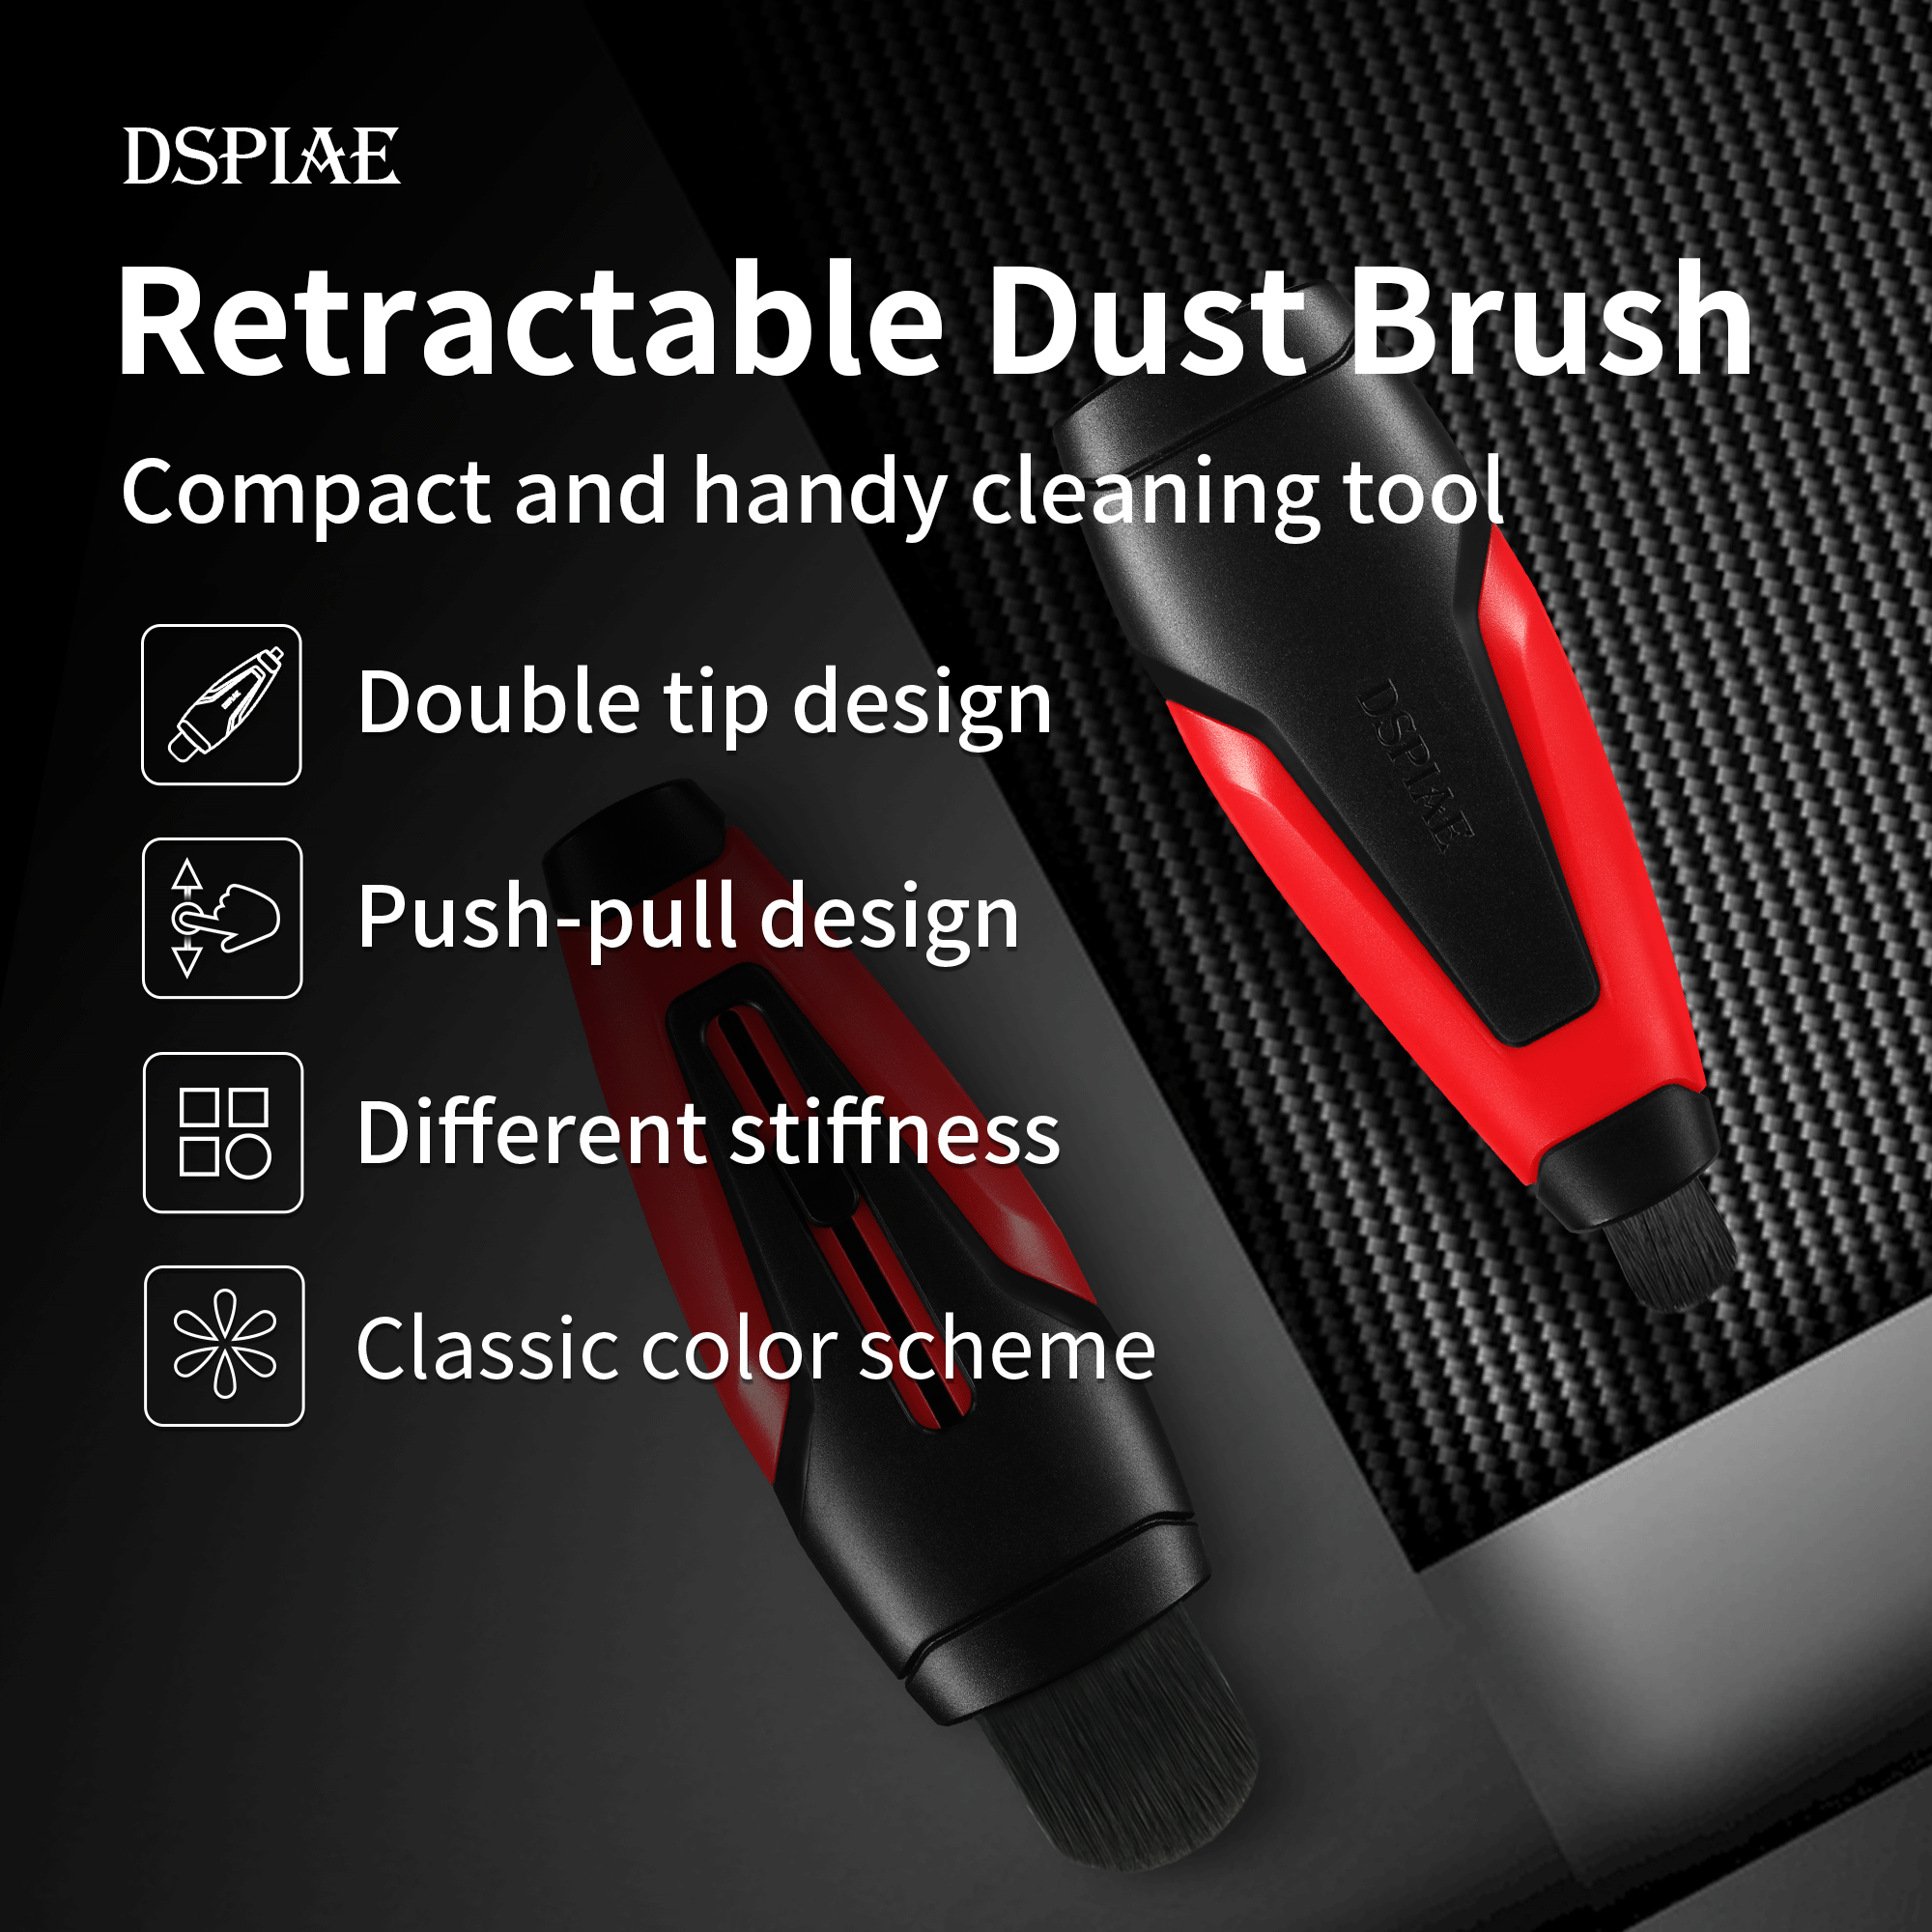 DSPIAE - PT-RDB Retractable Brush